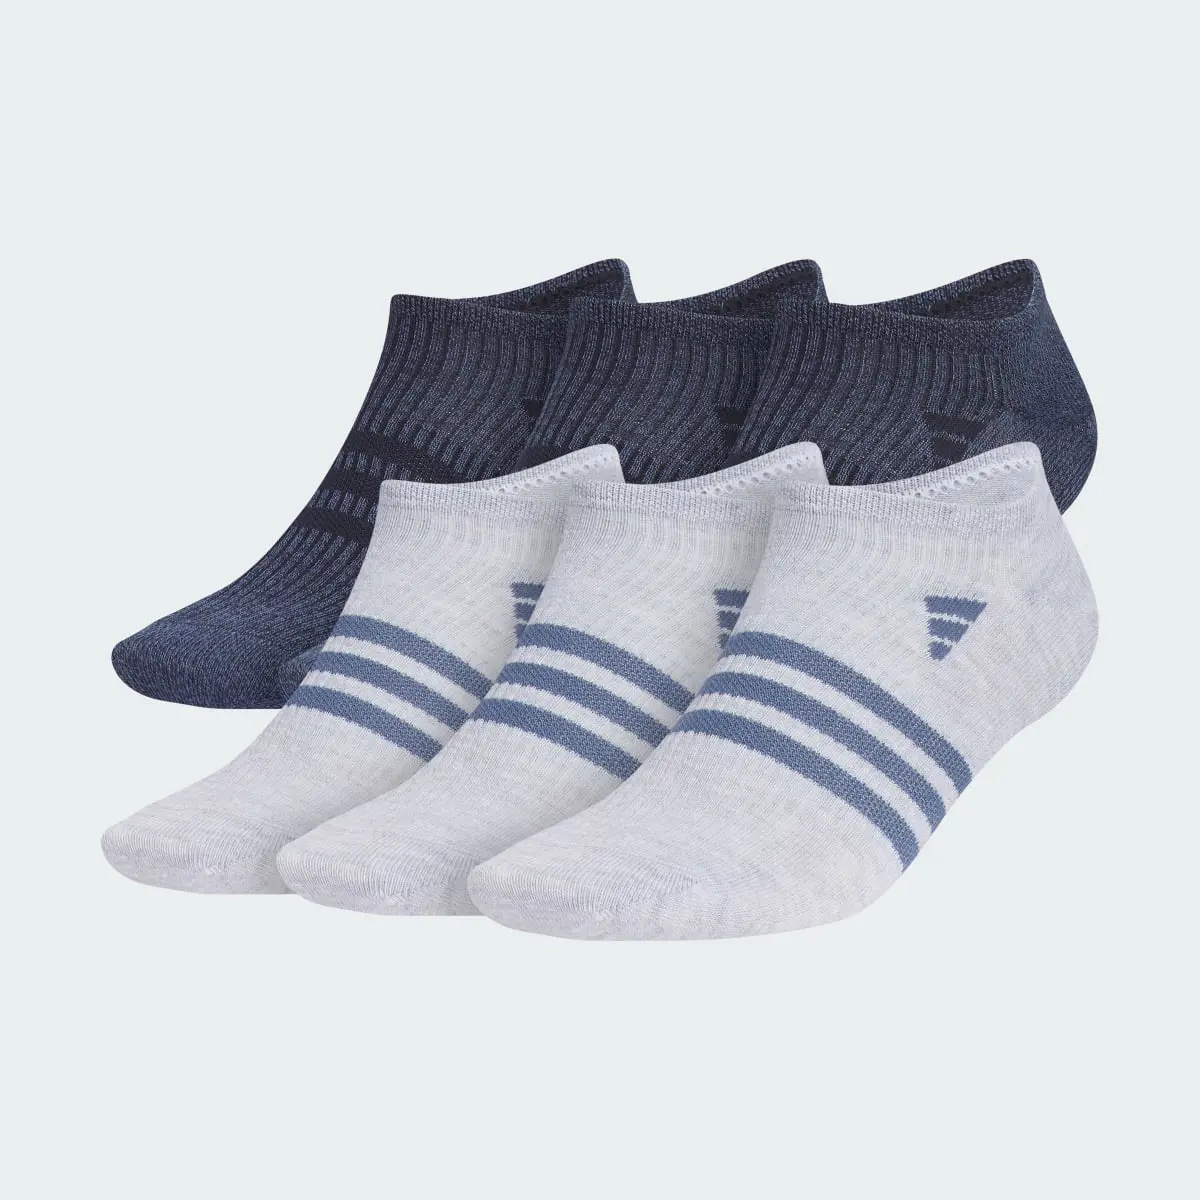 Adidas Superlite 3.0 6-Pack No-Show Socks. 2